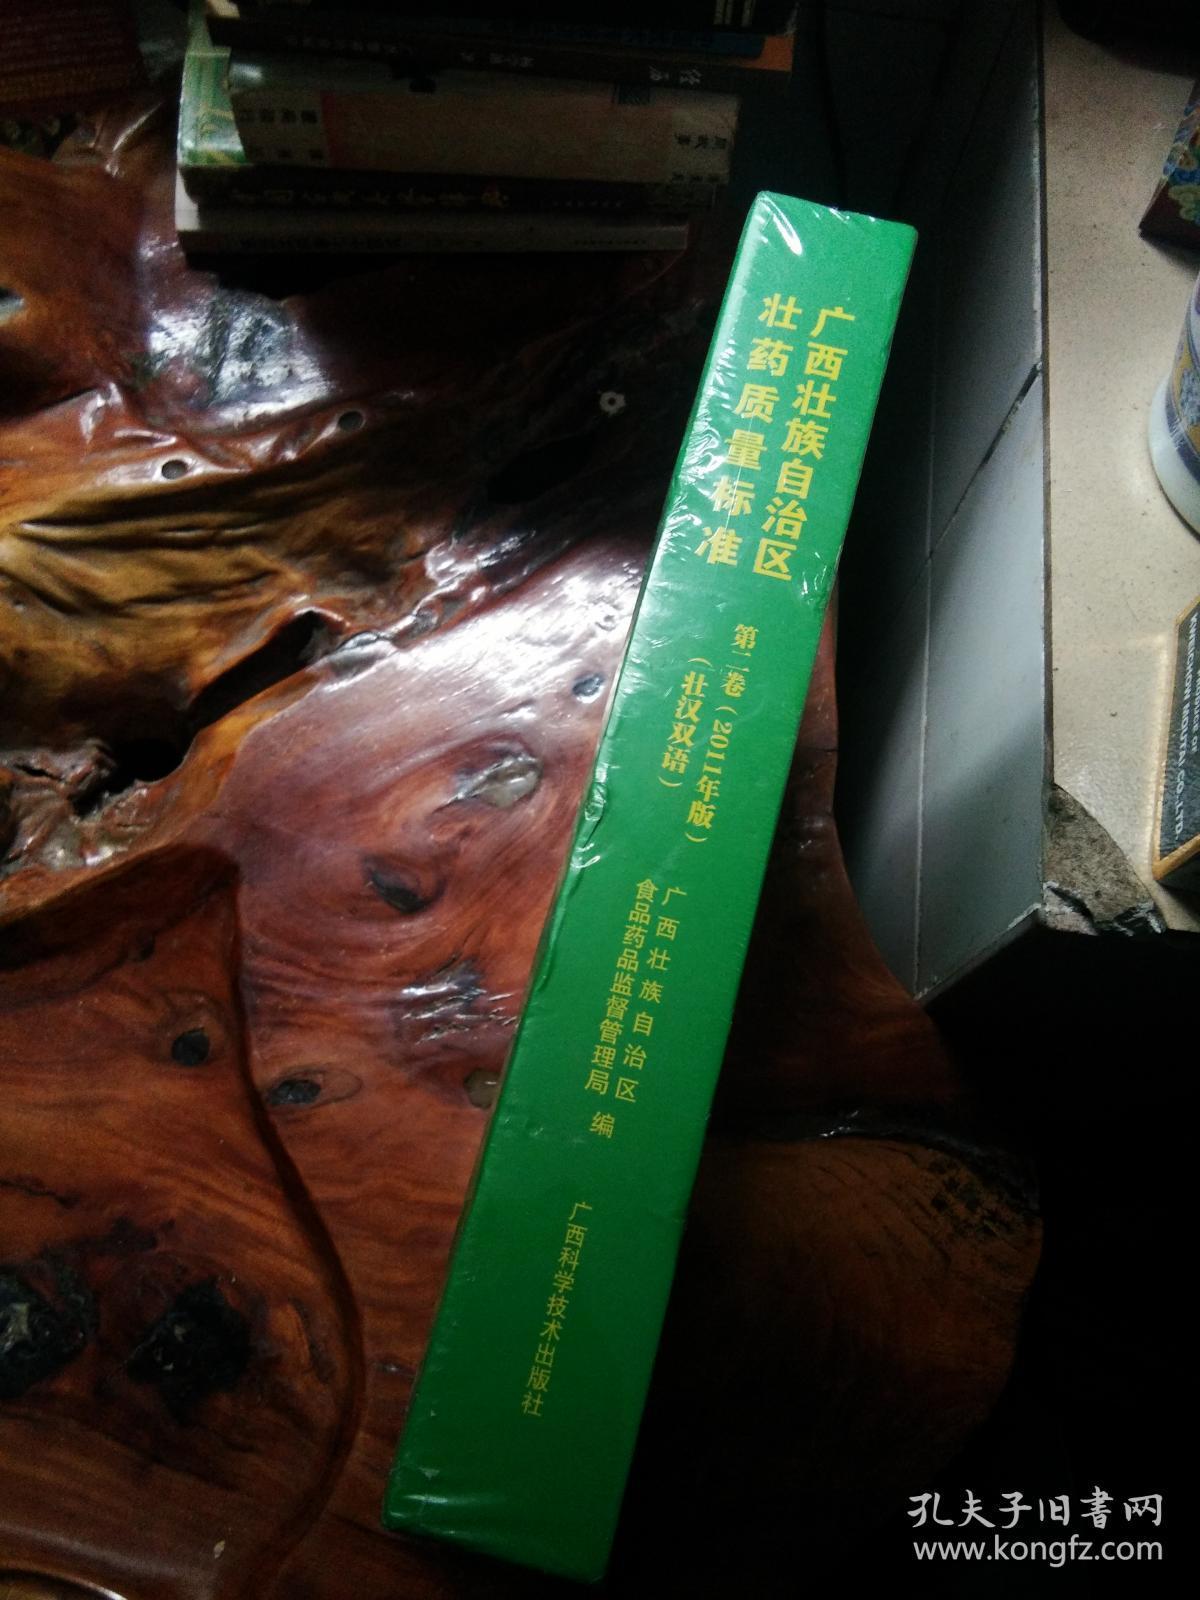 广西壮族自治区壮药质量标准 第二卷   壮汉双语   未拆封